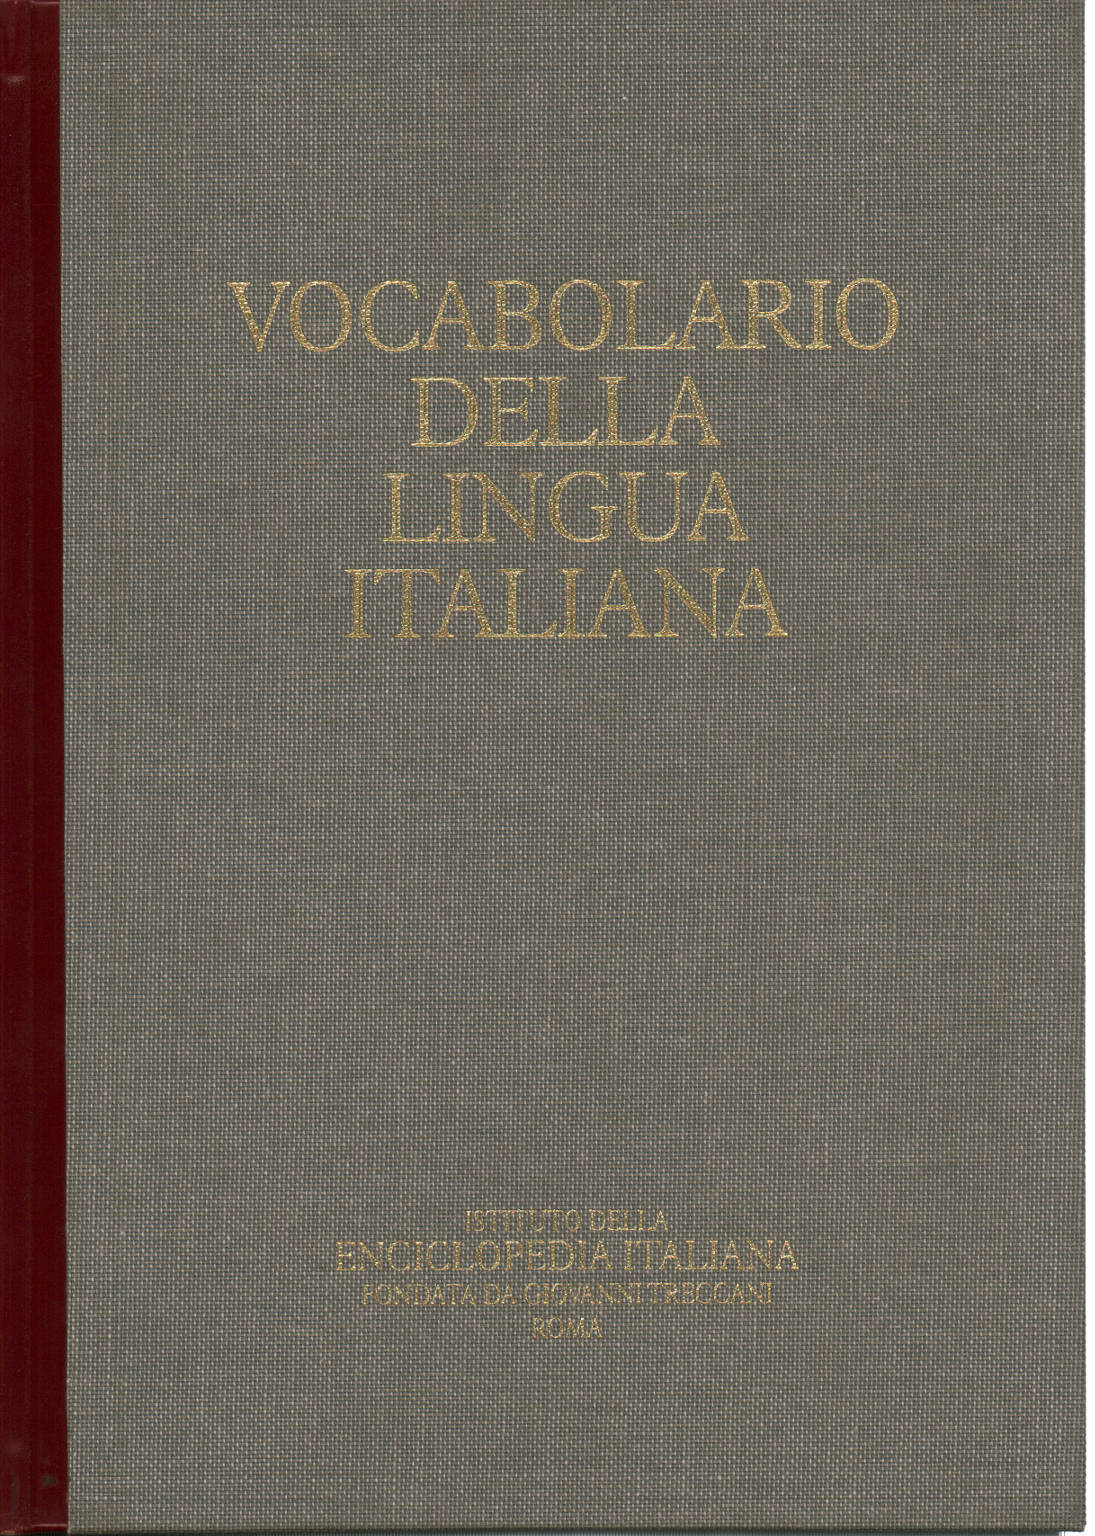 Vocabulario de la lengua italiana CD-ROM, AA.VV.